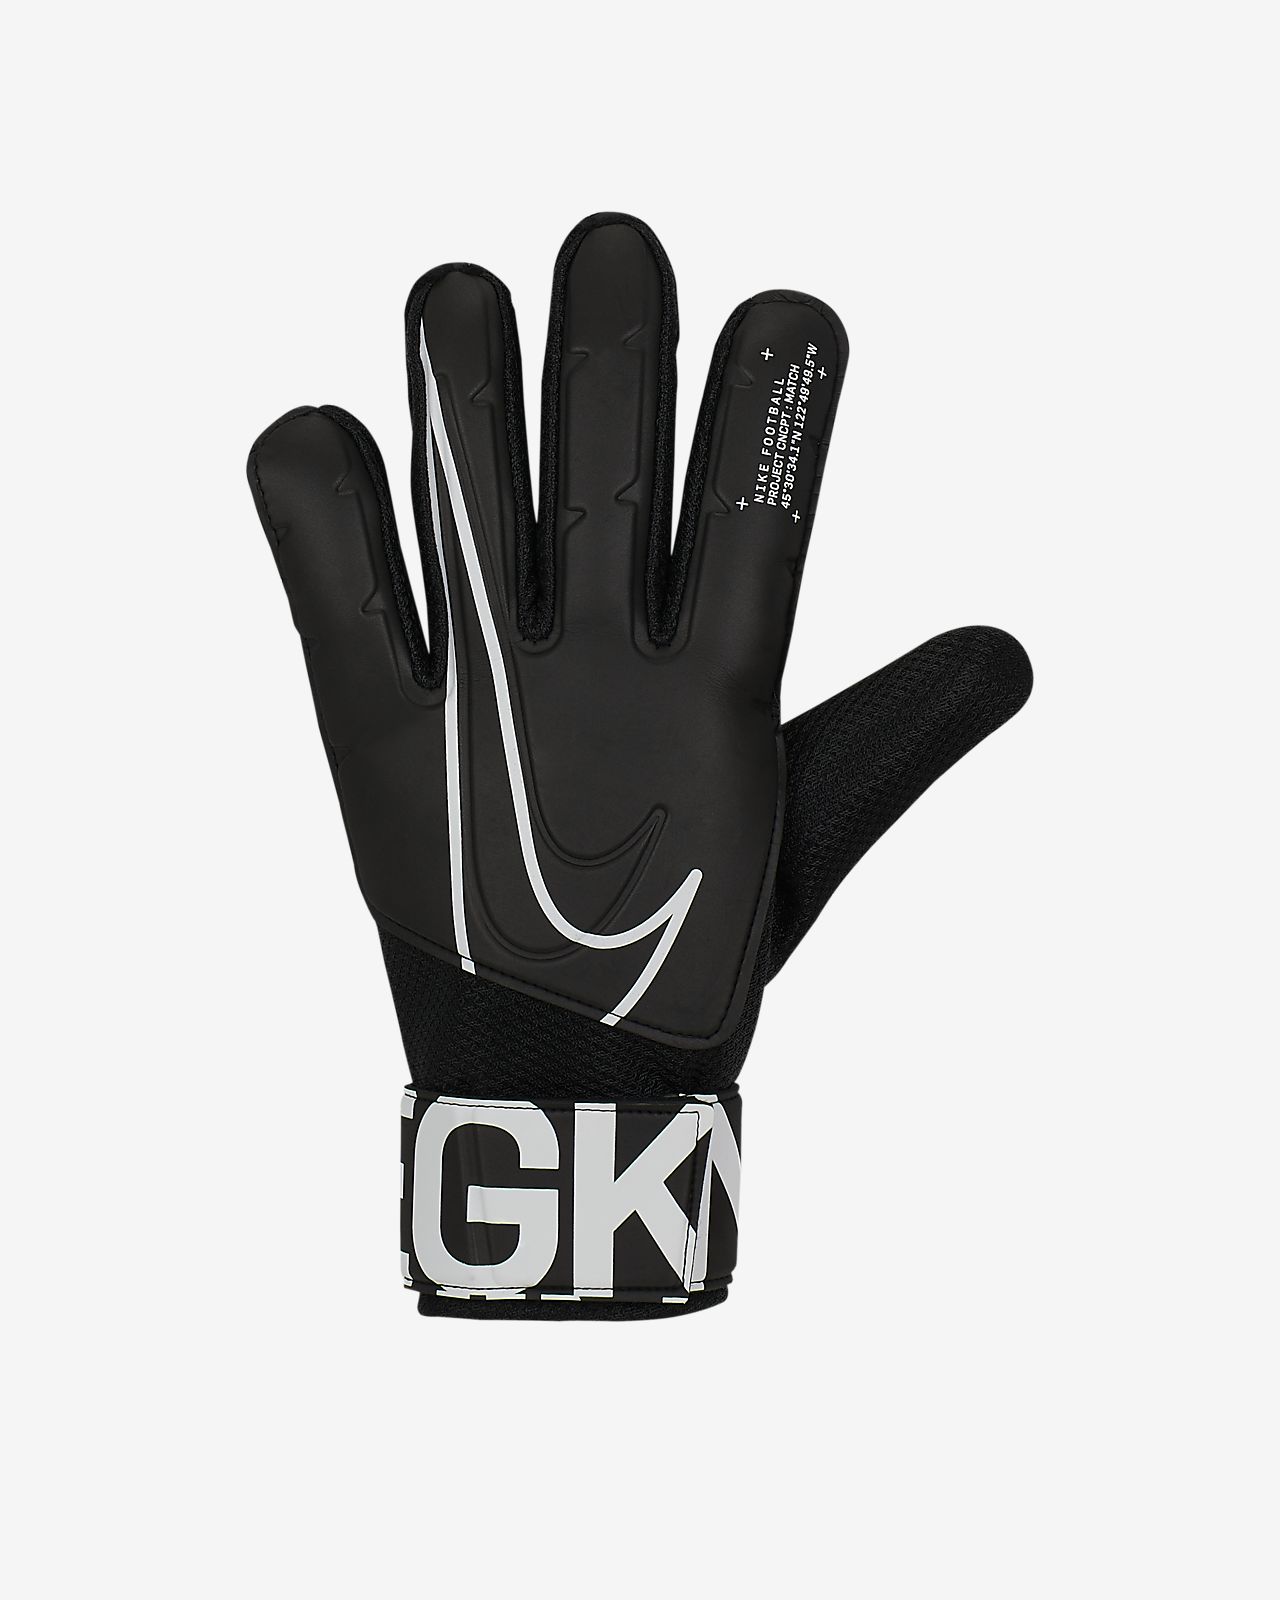 Nike Stadium Gloves Size Chart